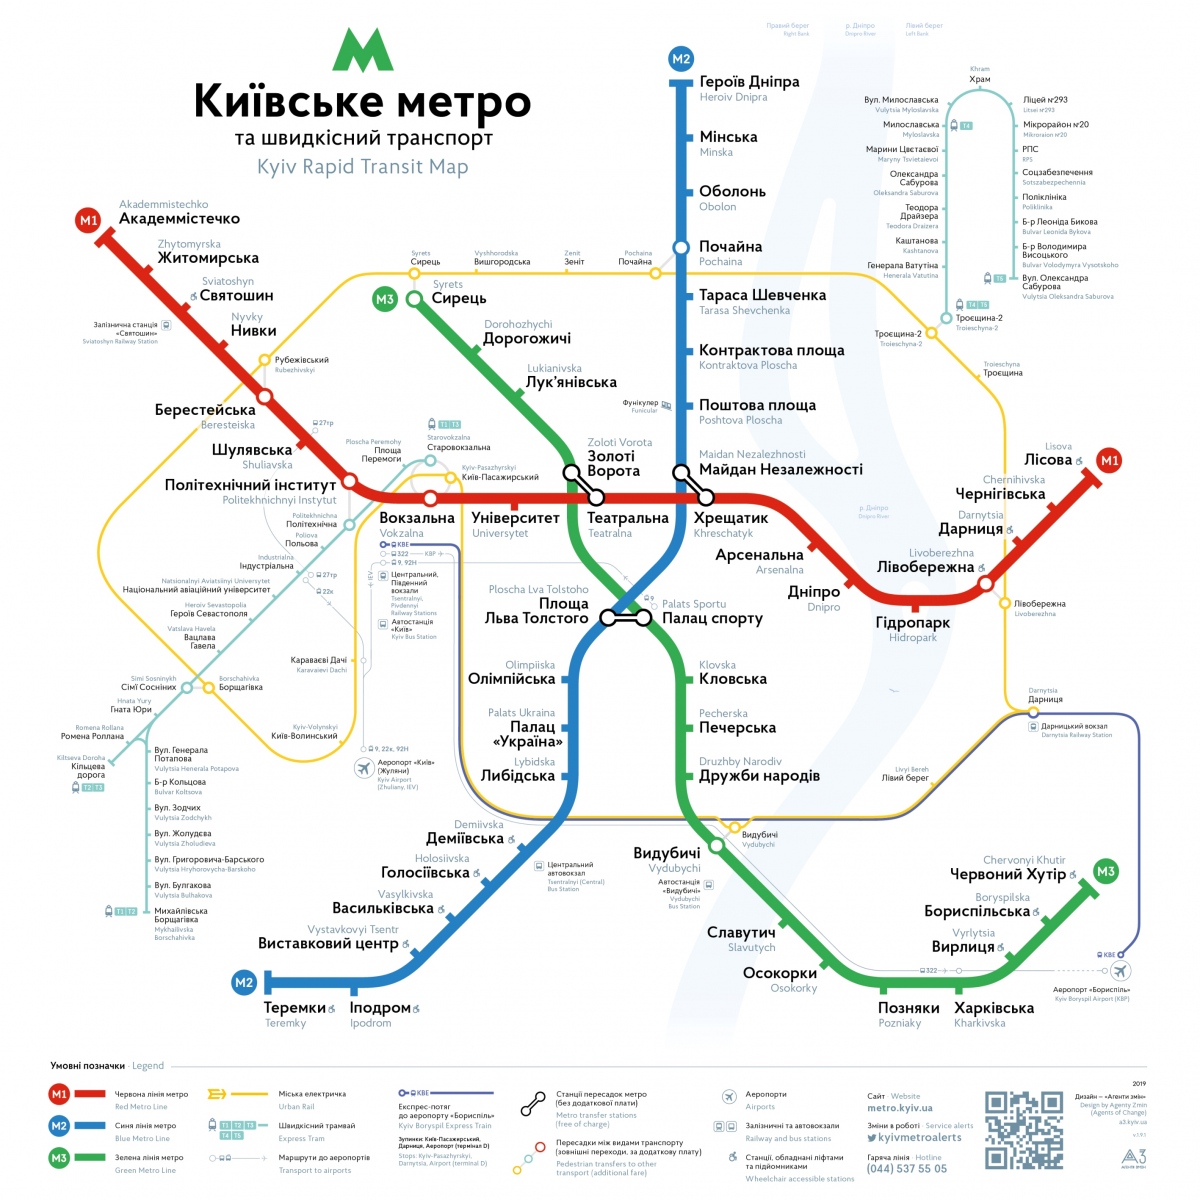 Киев — Метрополитен — Схемы линий; Киев — Общегородские карты и схемы